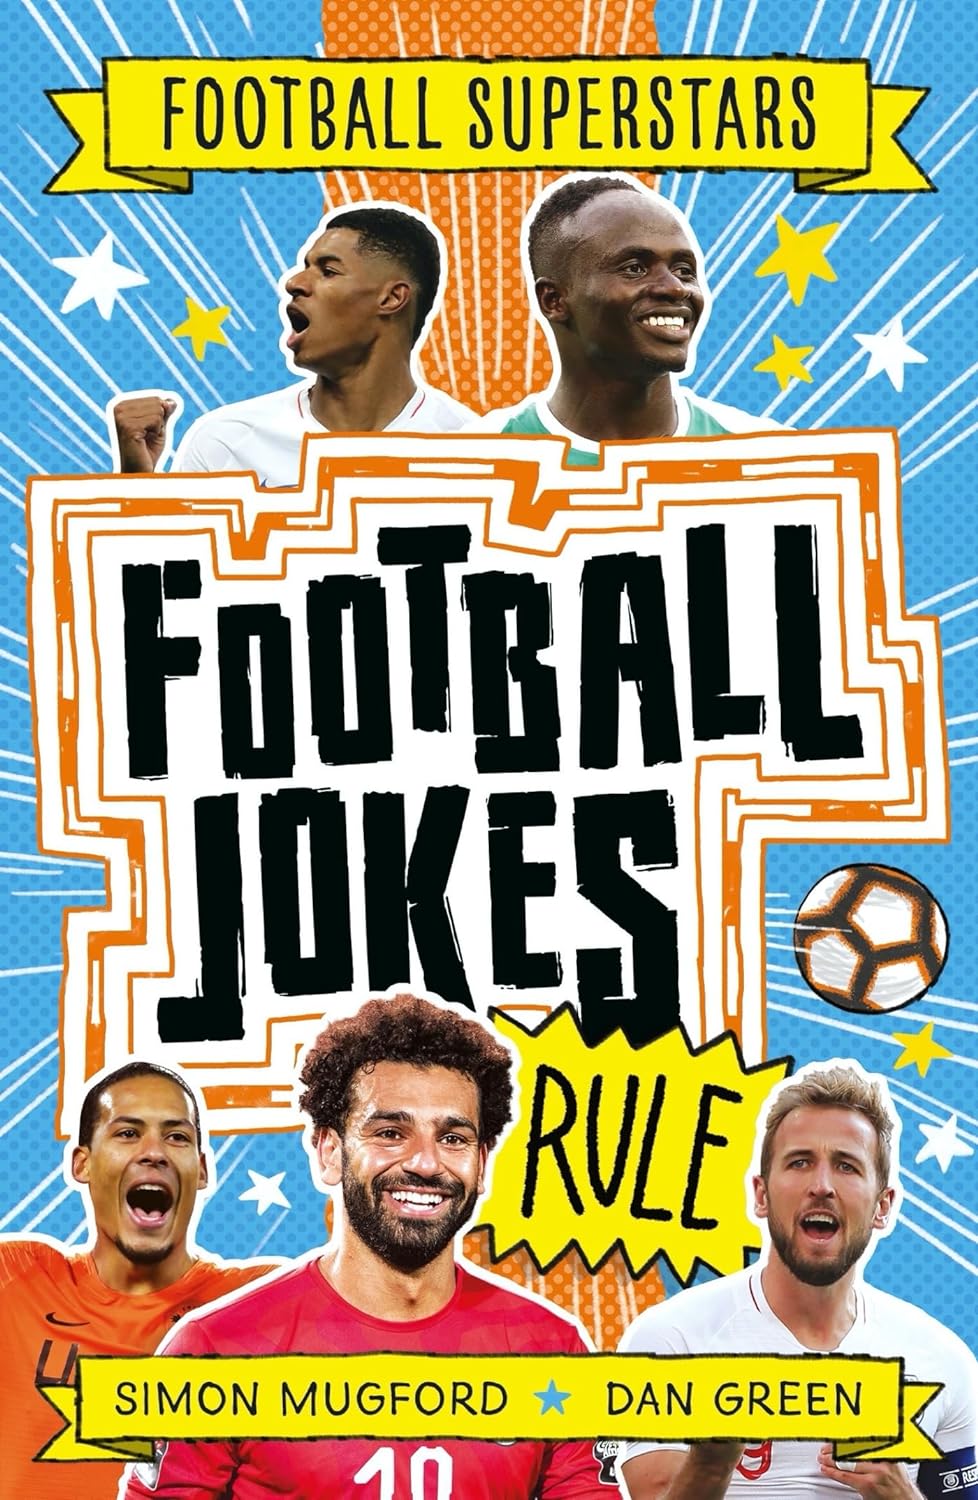 Football Superstars: Football Jokes Rules